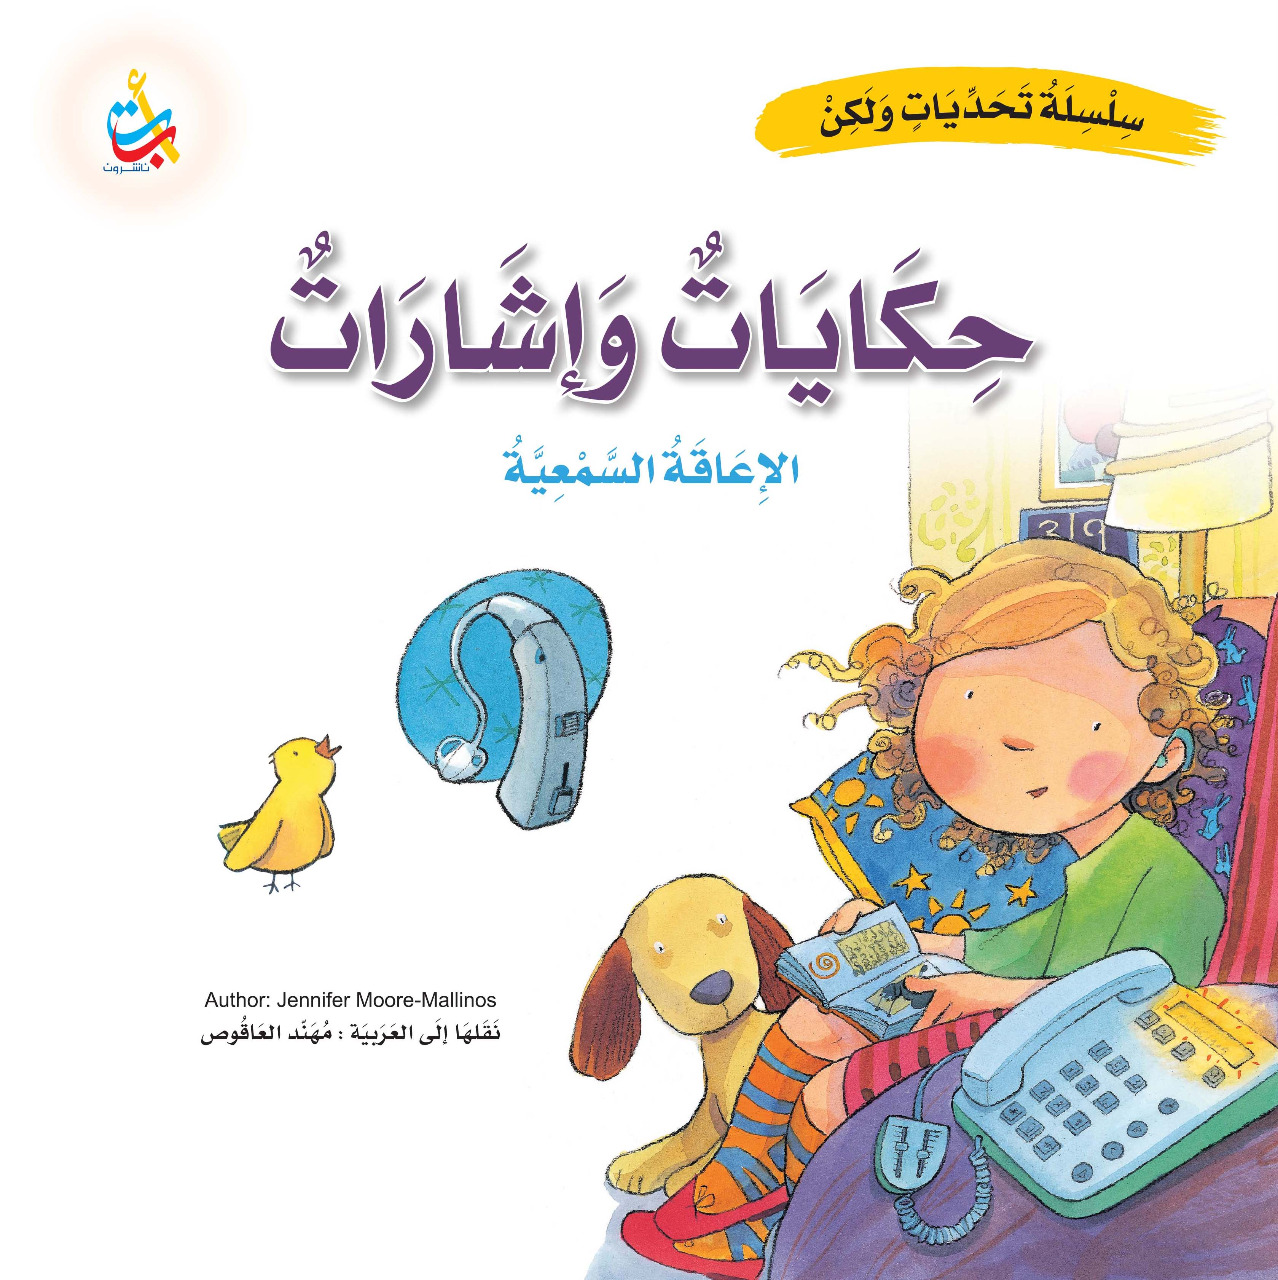 سلسلة الصحابة وسلسلة تحديات ولكن للأطفال اصدارات جديدة في رمضان